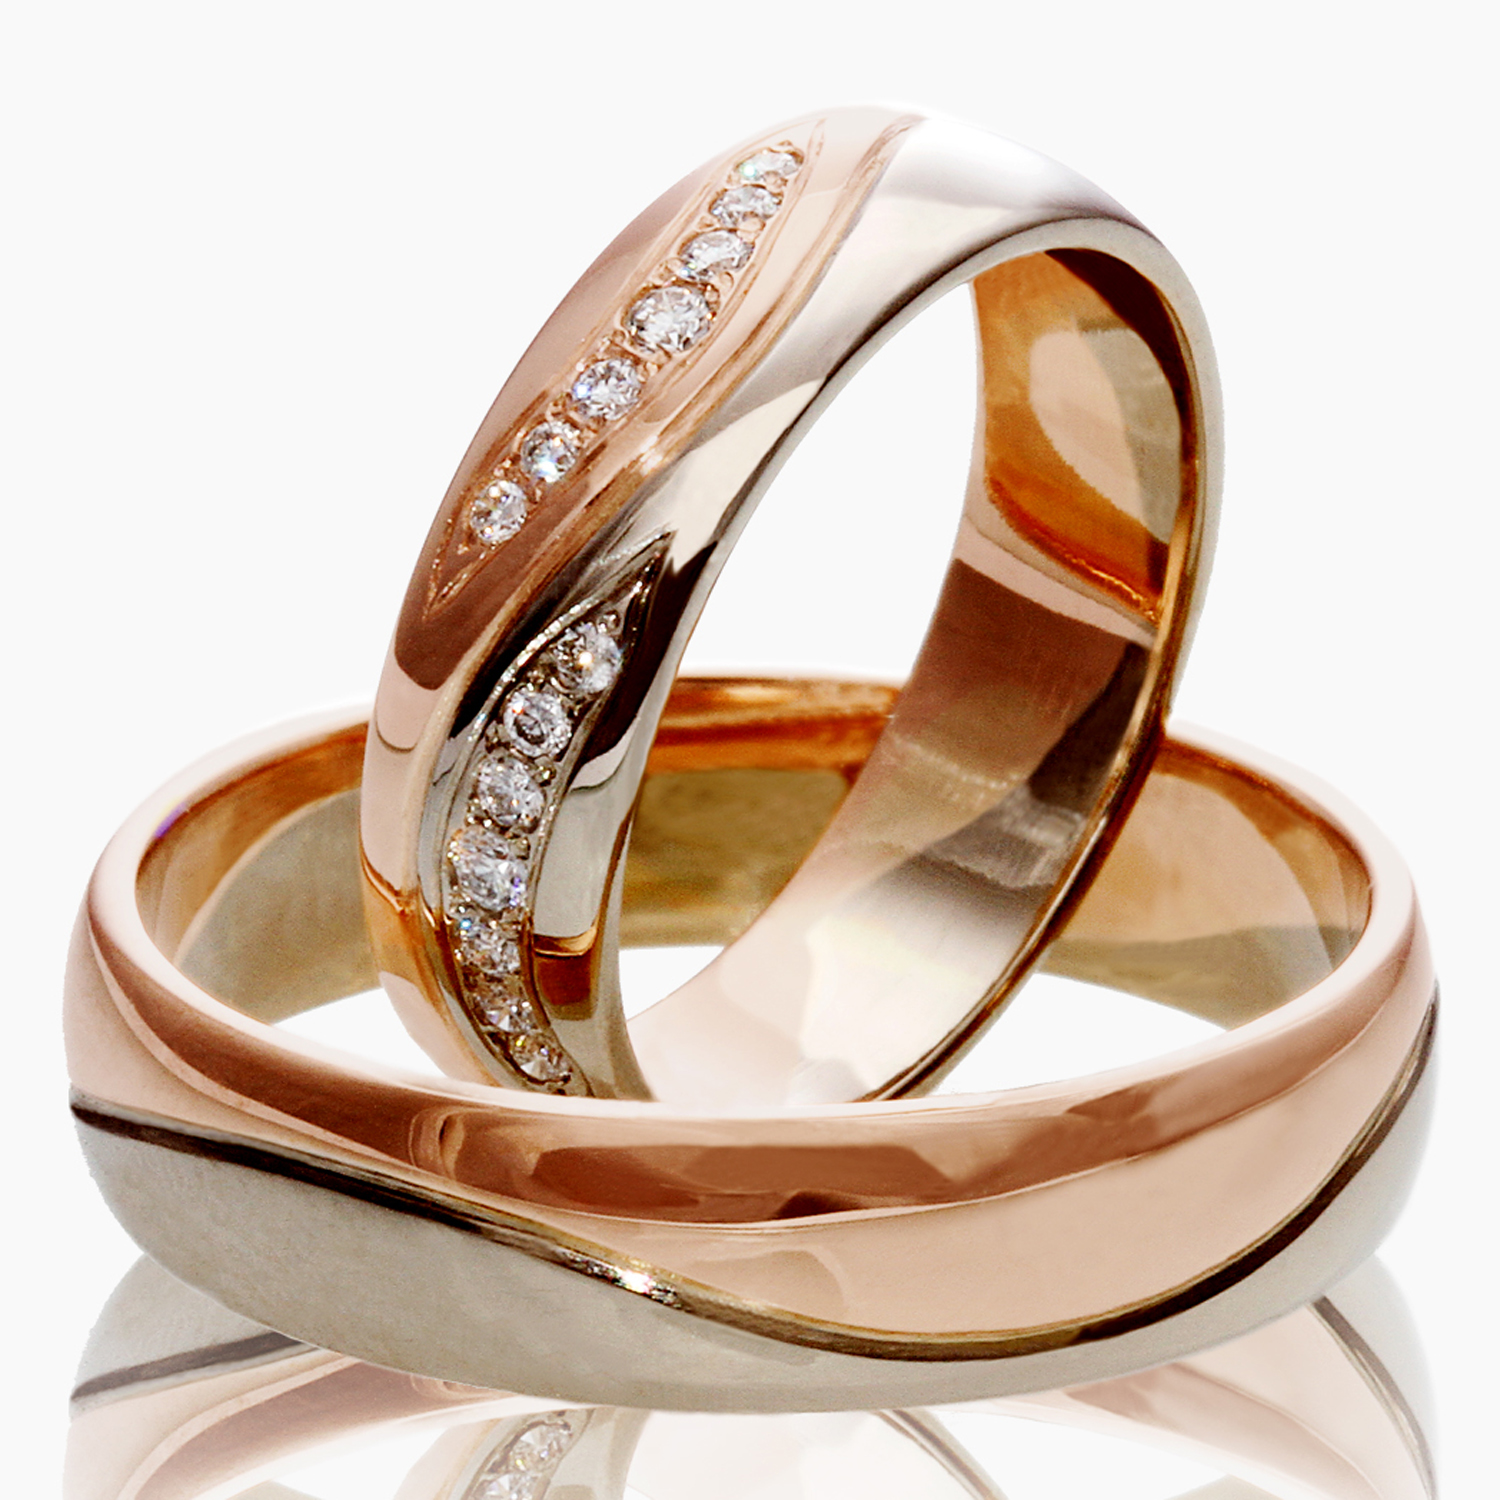 585 золотой кольца обручальные женские. Европейские обручальные кольца 585. Кольца золотые женские обручальные 585. 585 Золотой обручальные кольца. Кольцо обручальное женское золотое.